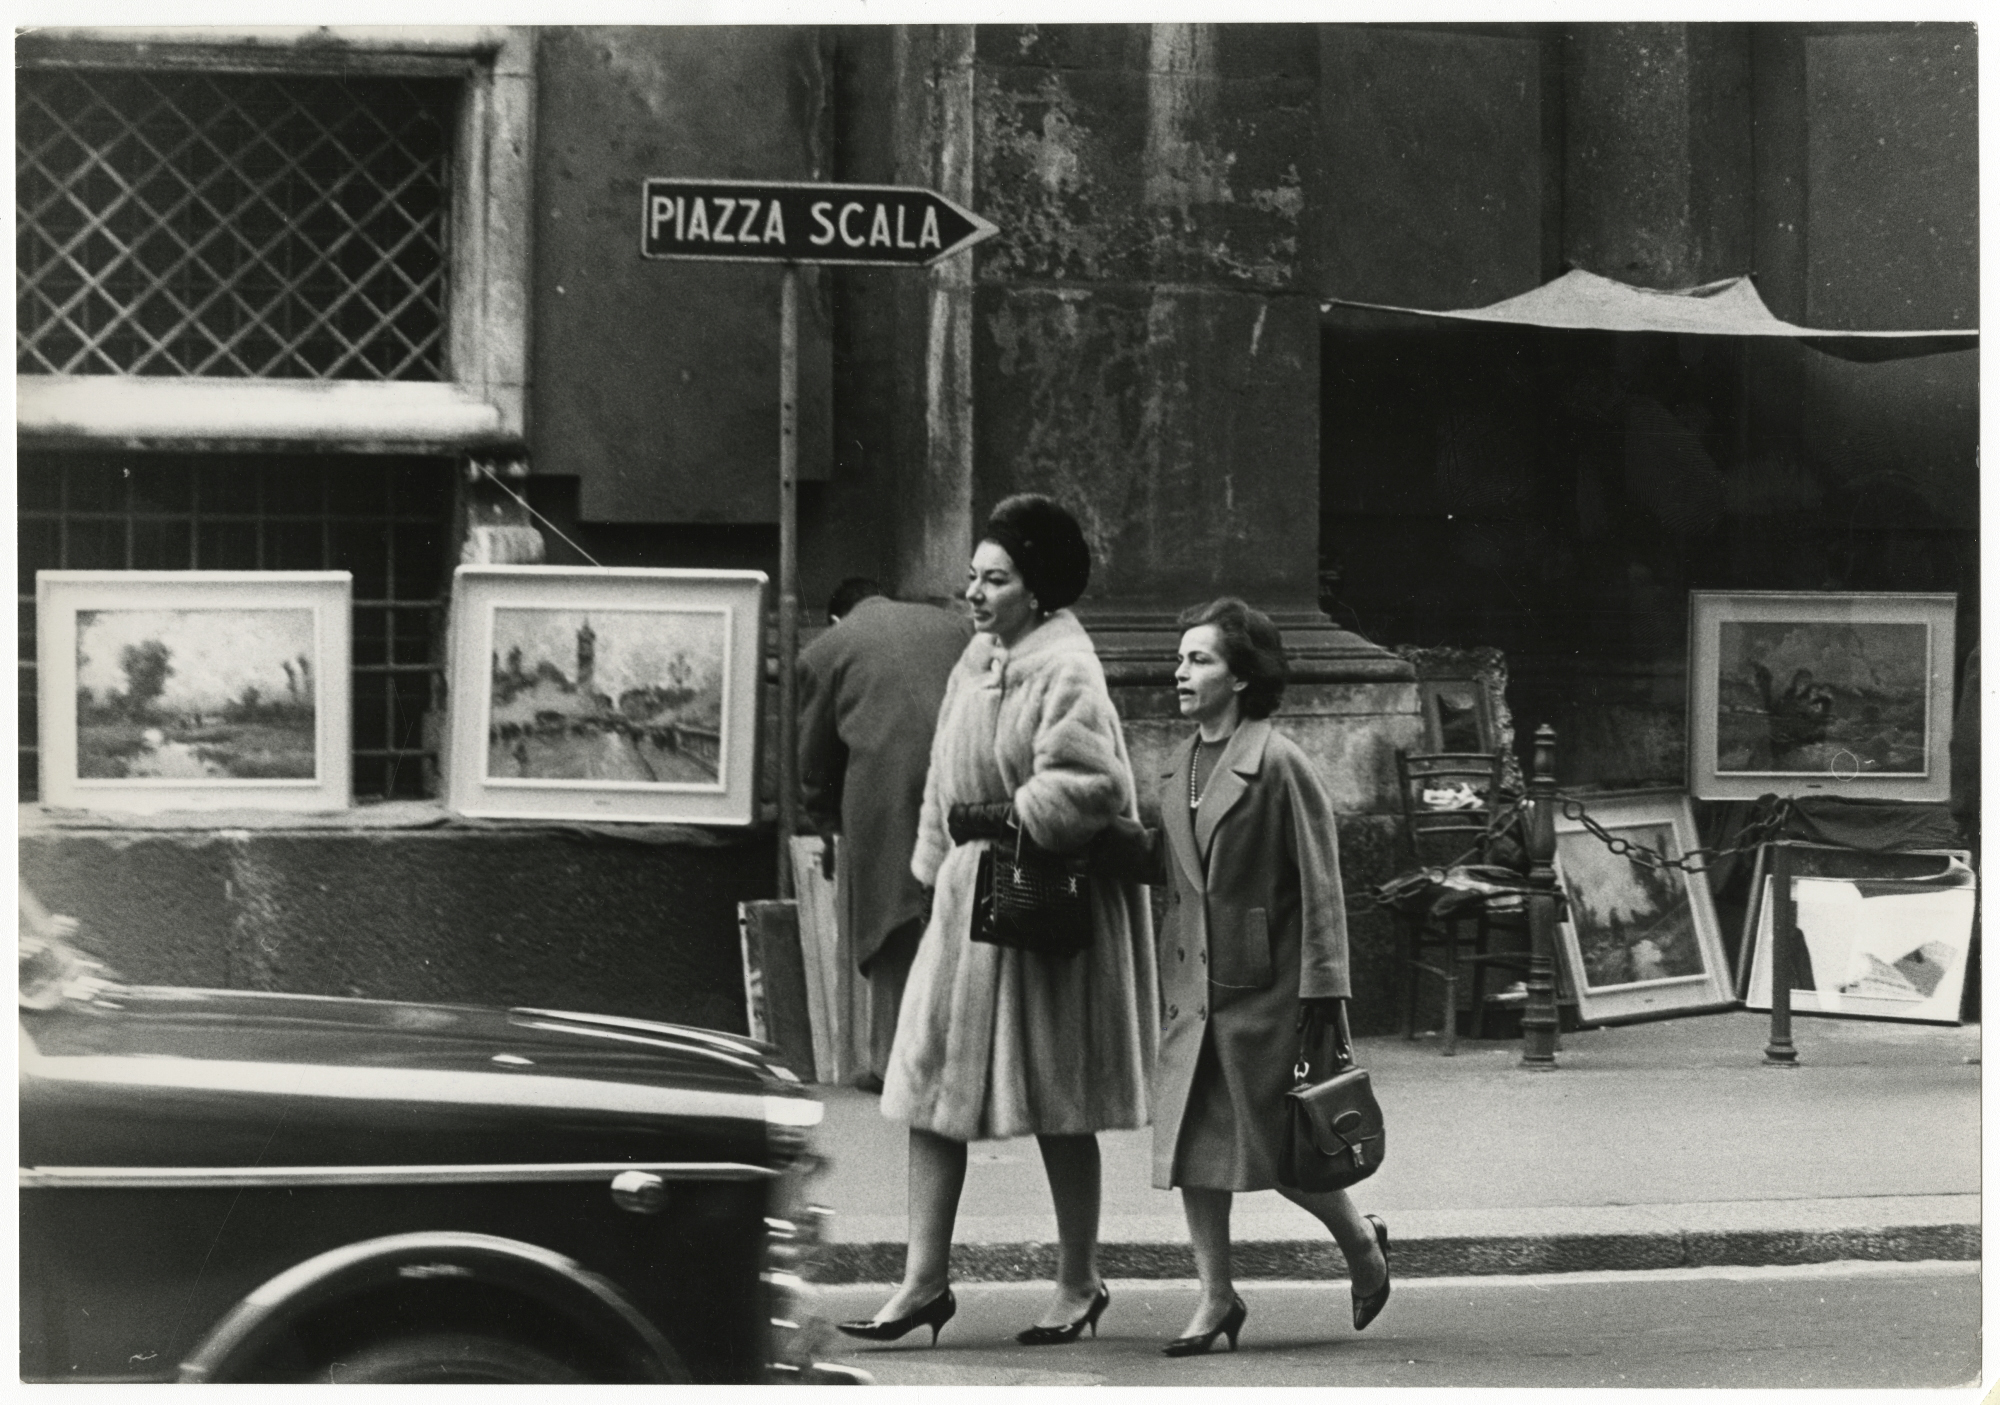 Maria Callas passeggia per le vie del centro insieme alla sua segretaria Bruna Lupoli.